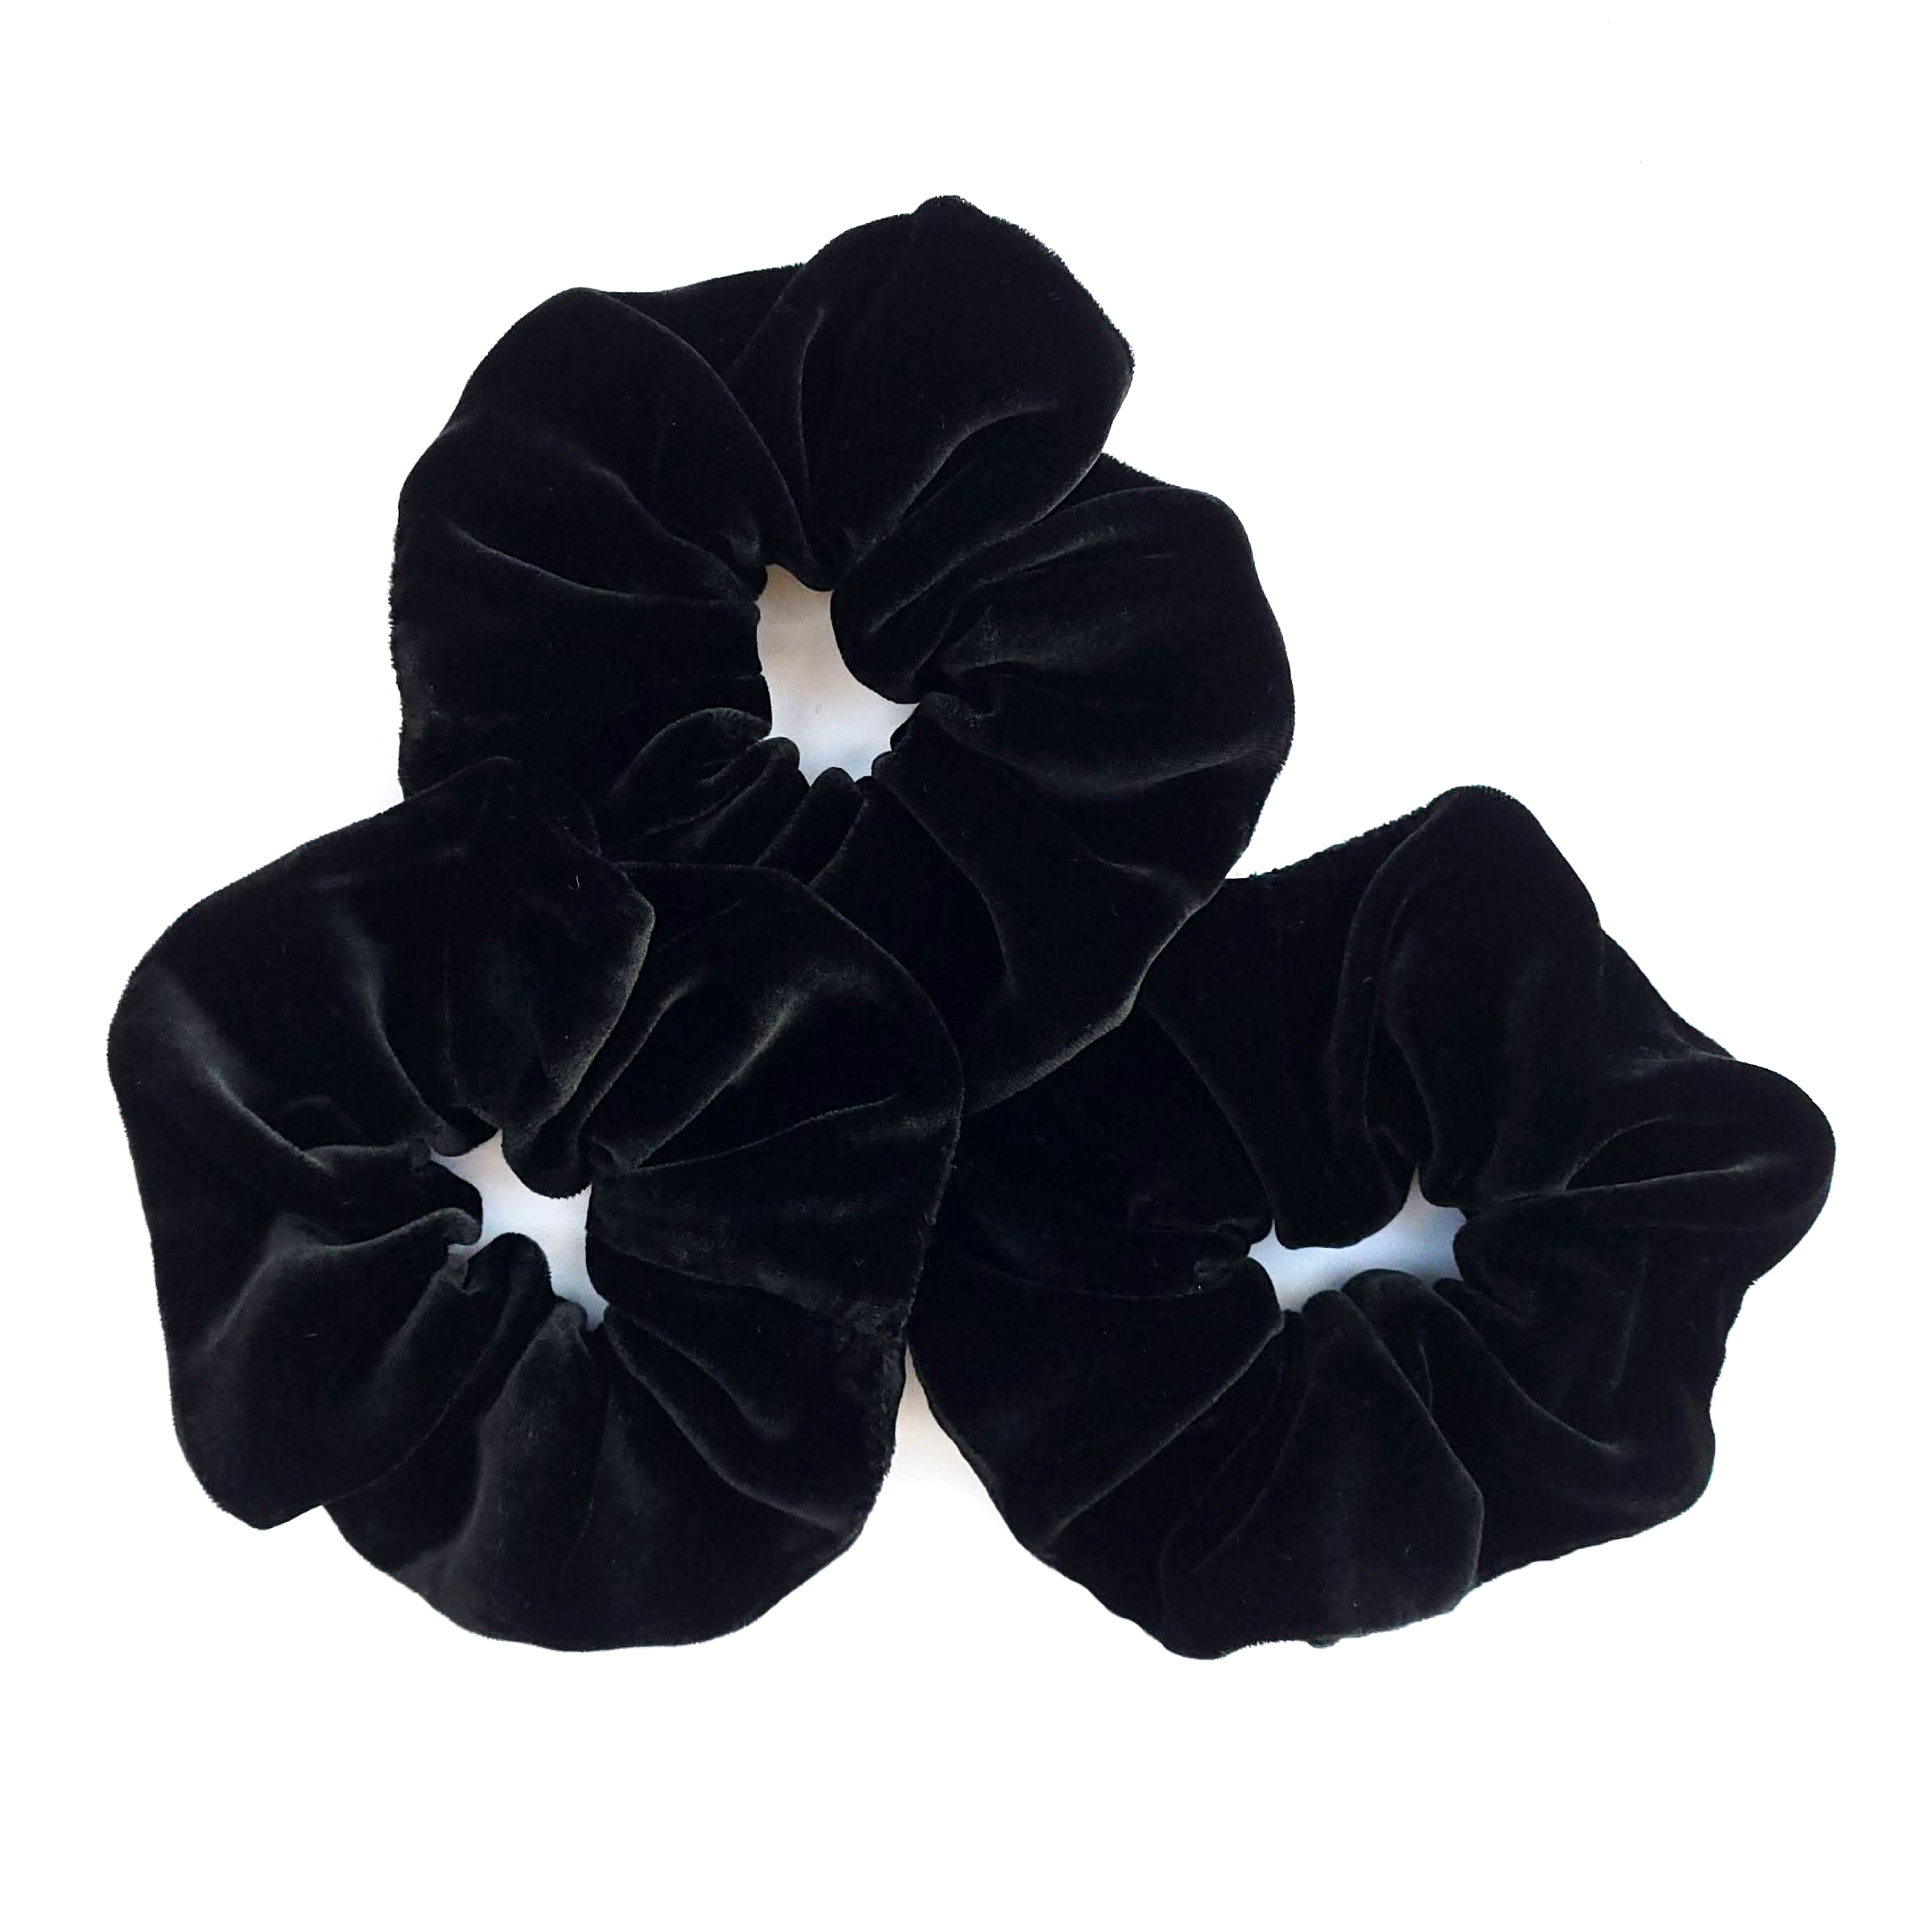 jumbo oversized silk velvet black scrunchie hair accessory handmade by Lynne Kiel